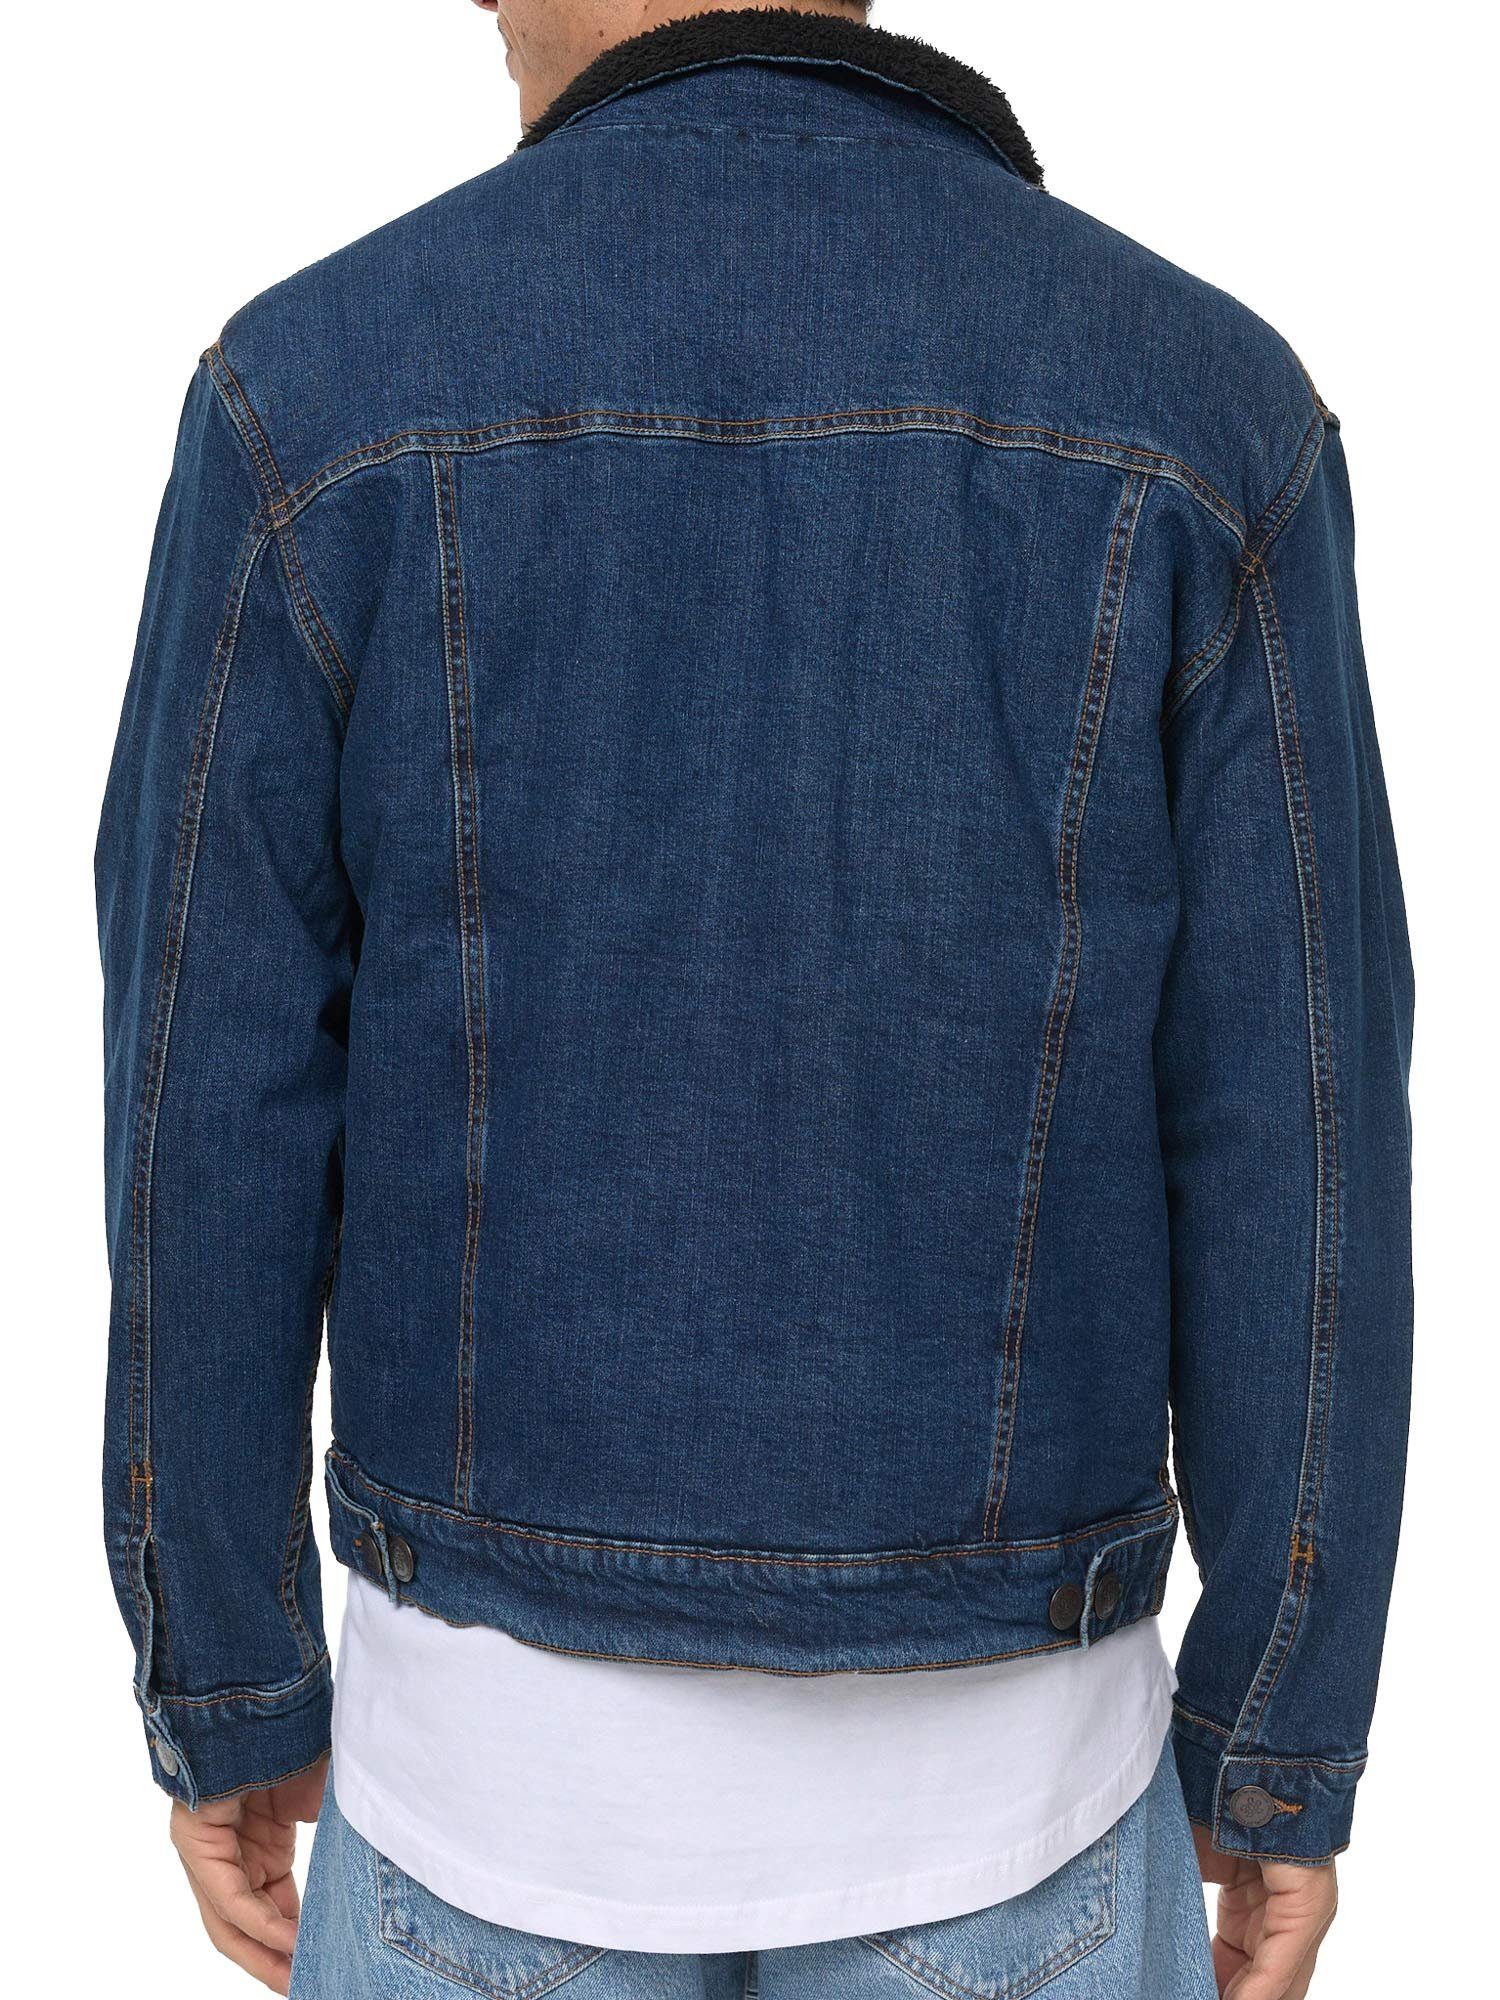 Tazzio Jacke Jeans dunkelblau Fellkragen Jeansjacke mit A400